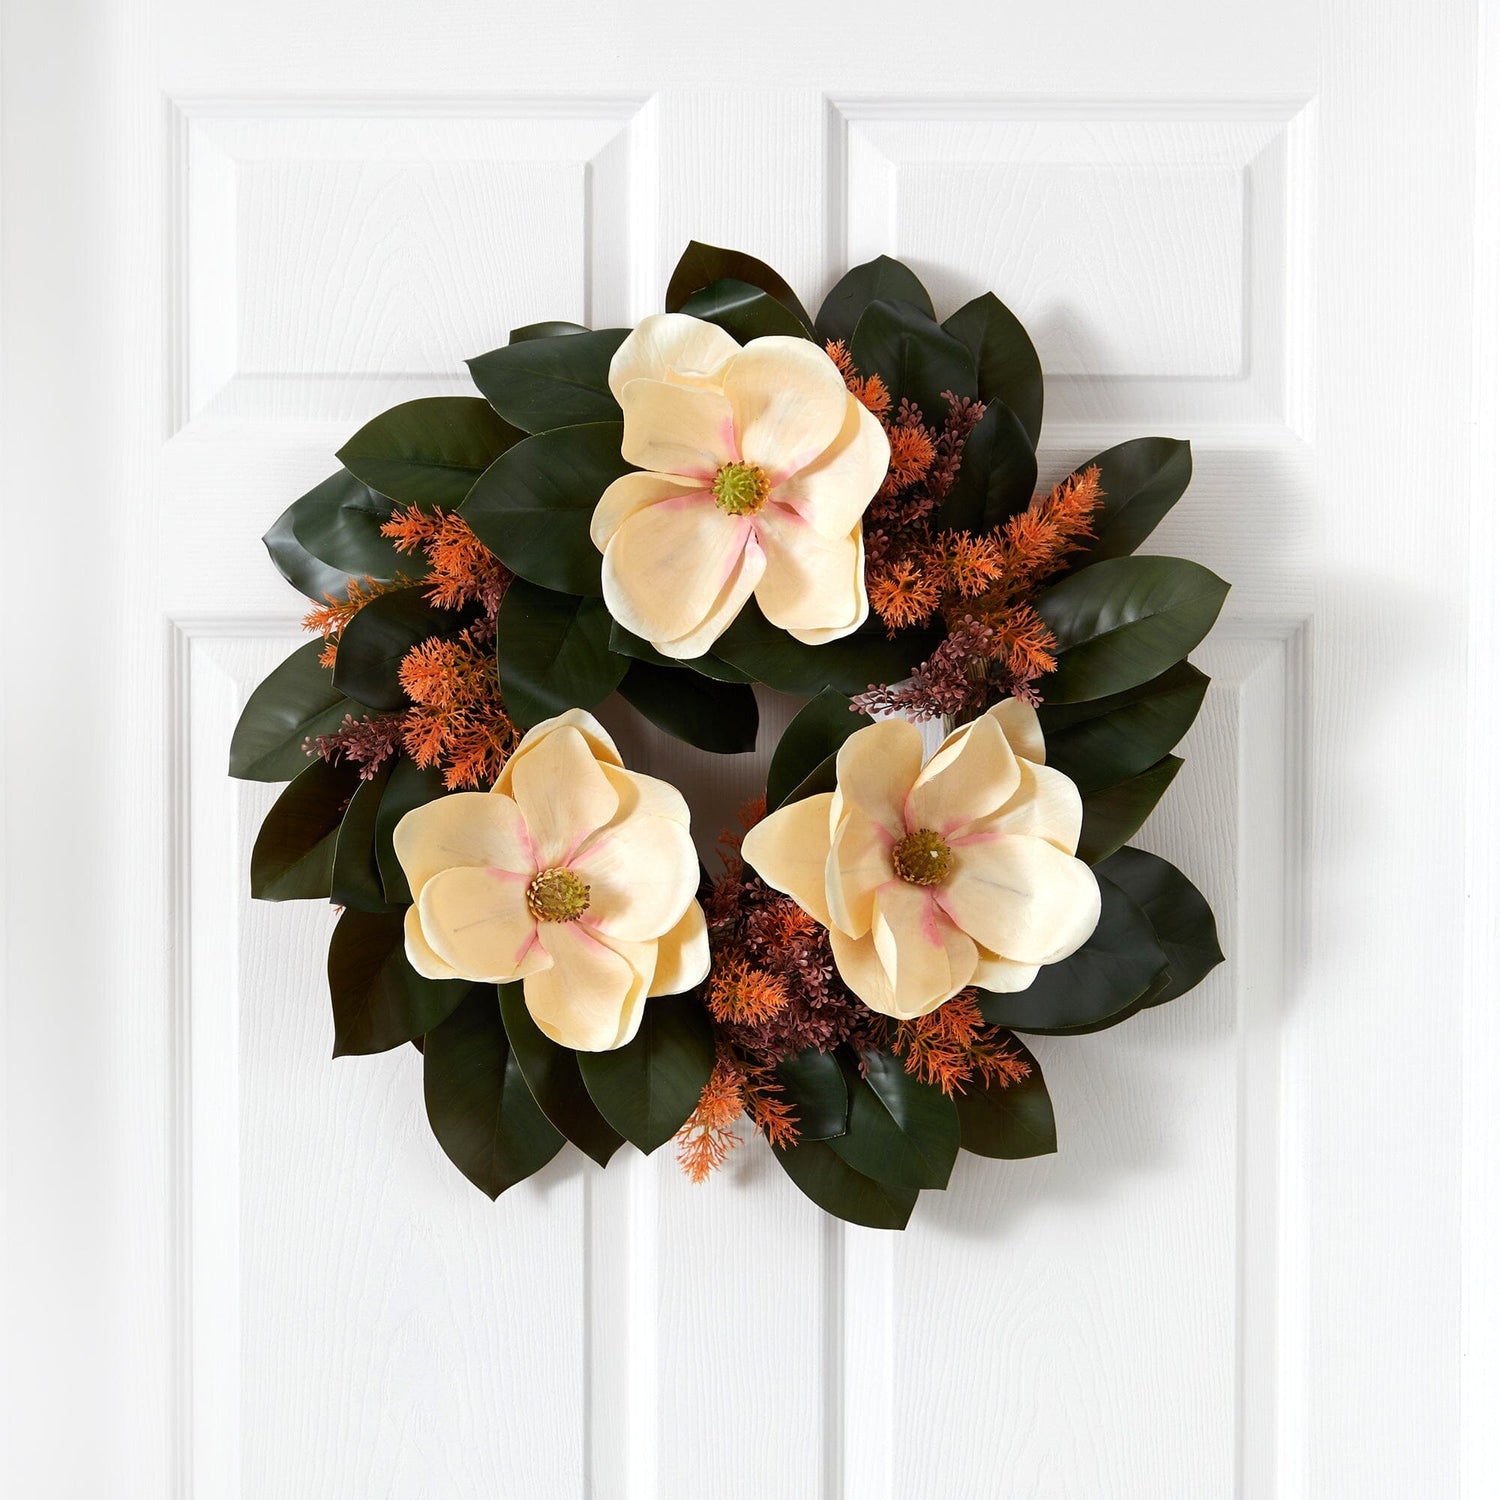 24” Magnolia Artificial Wreath